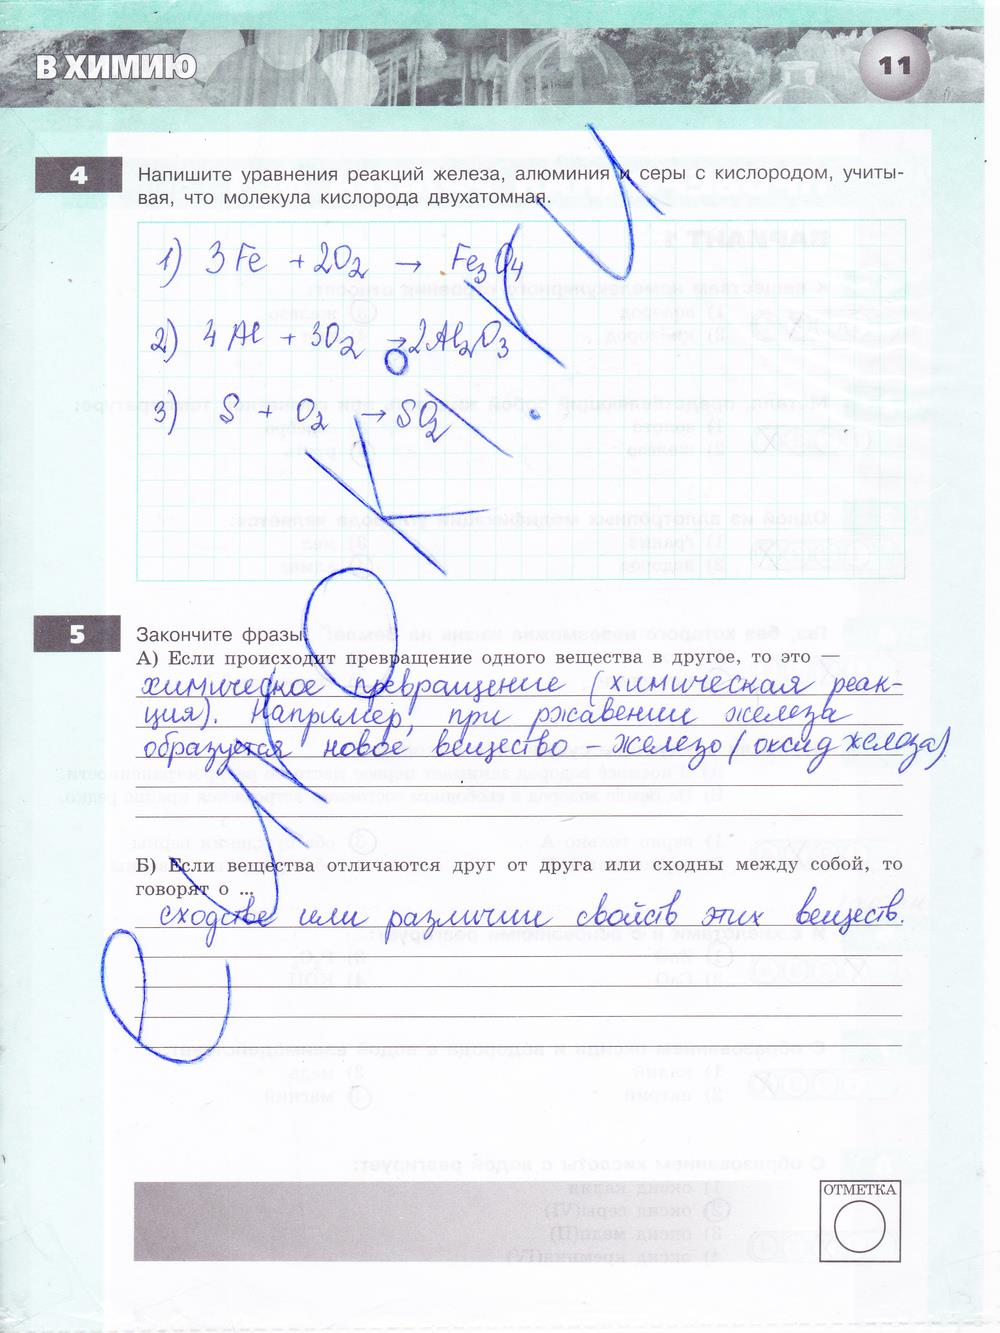 гдз 8 класс тетрадь-экзаменатор страница 11 химия Бобылева, Бирюлина